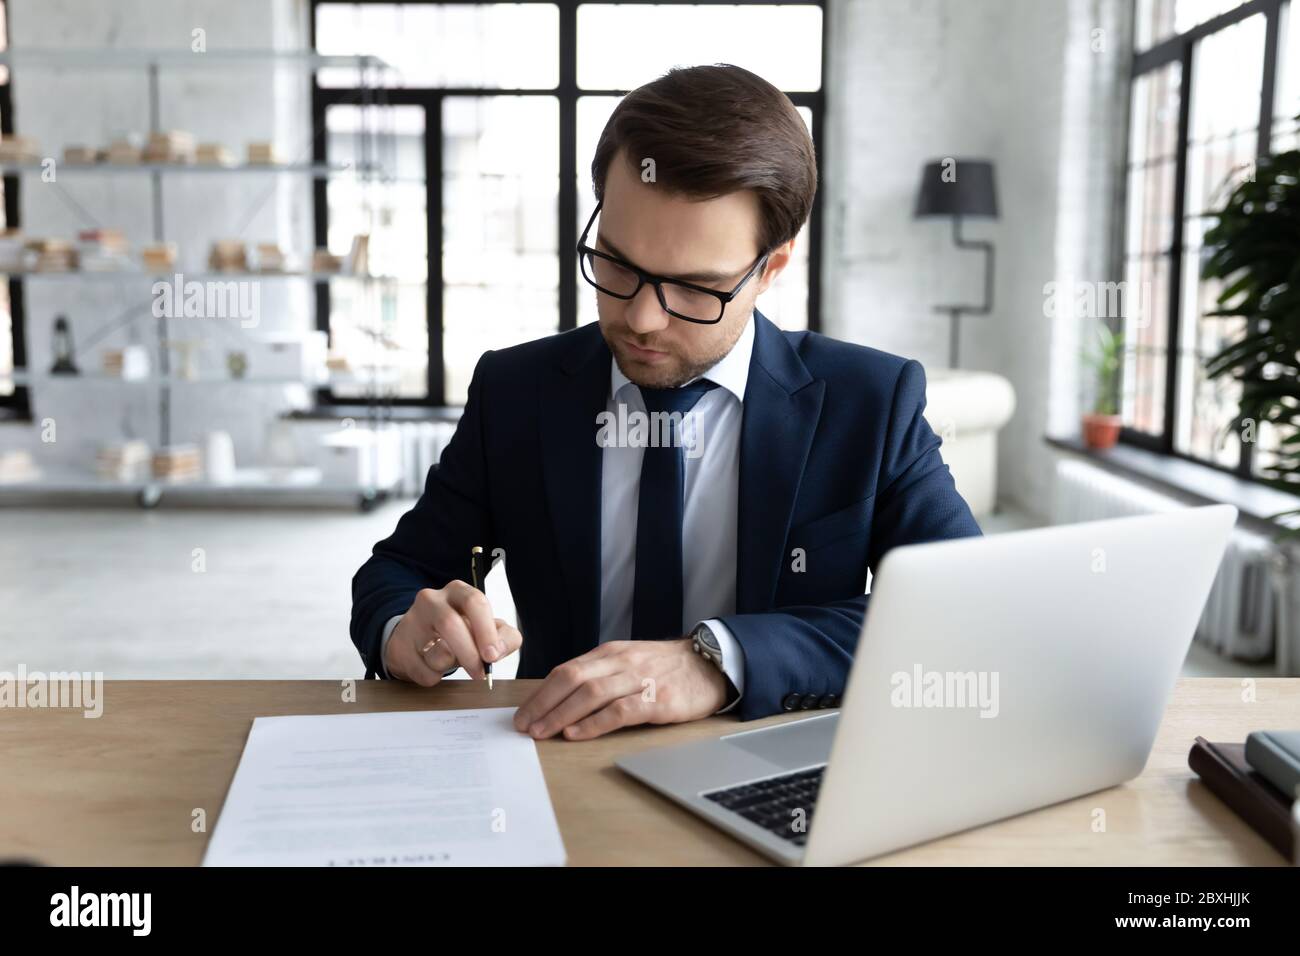 Un homme d'affaires sérieux signe un contrat papier au bureau Photo Stock -  Alamy